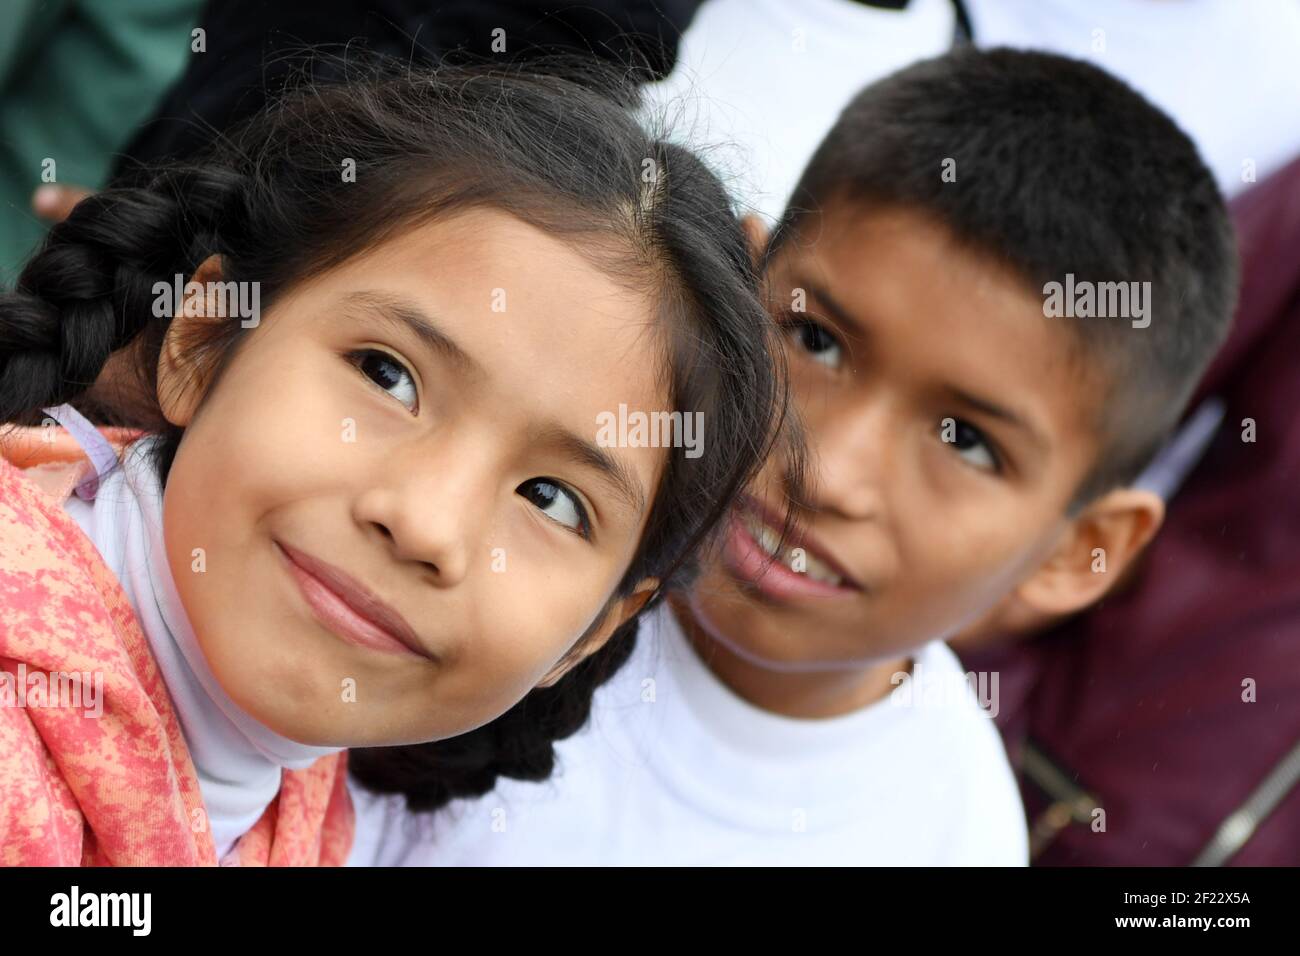 Peruanische Kinder während des Besuchs der französischen Delegation Paris 2024 Kandidatur in Collique Slum für das Projekt "Peru, Freinung, Solidarität" , Lima, September 11, 2017, Foto Philippe Millereau / KMSP / PARIS 2024 / DPPI Stockfoto